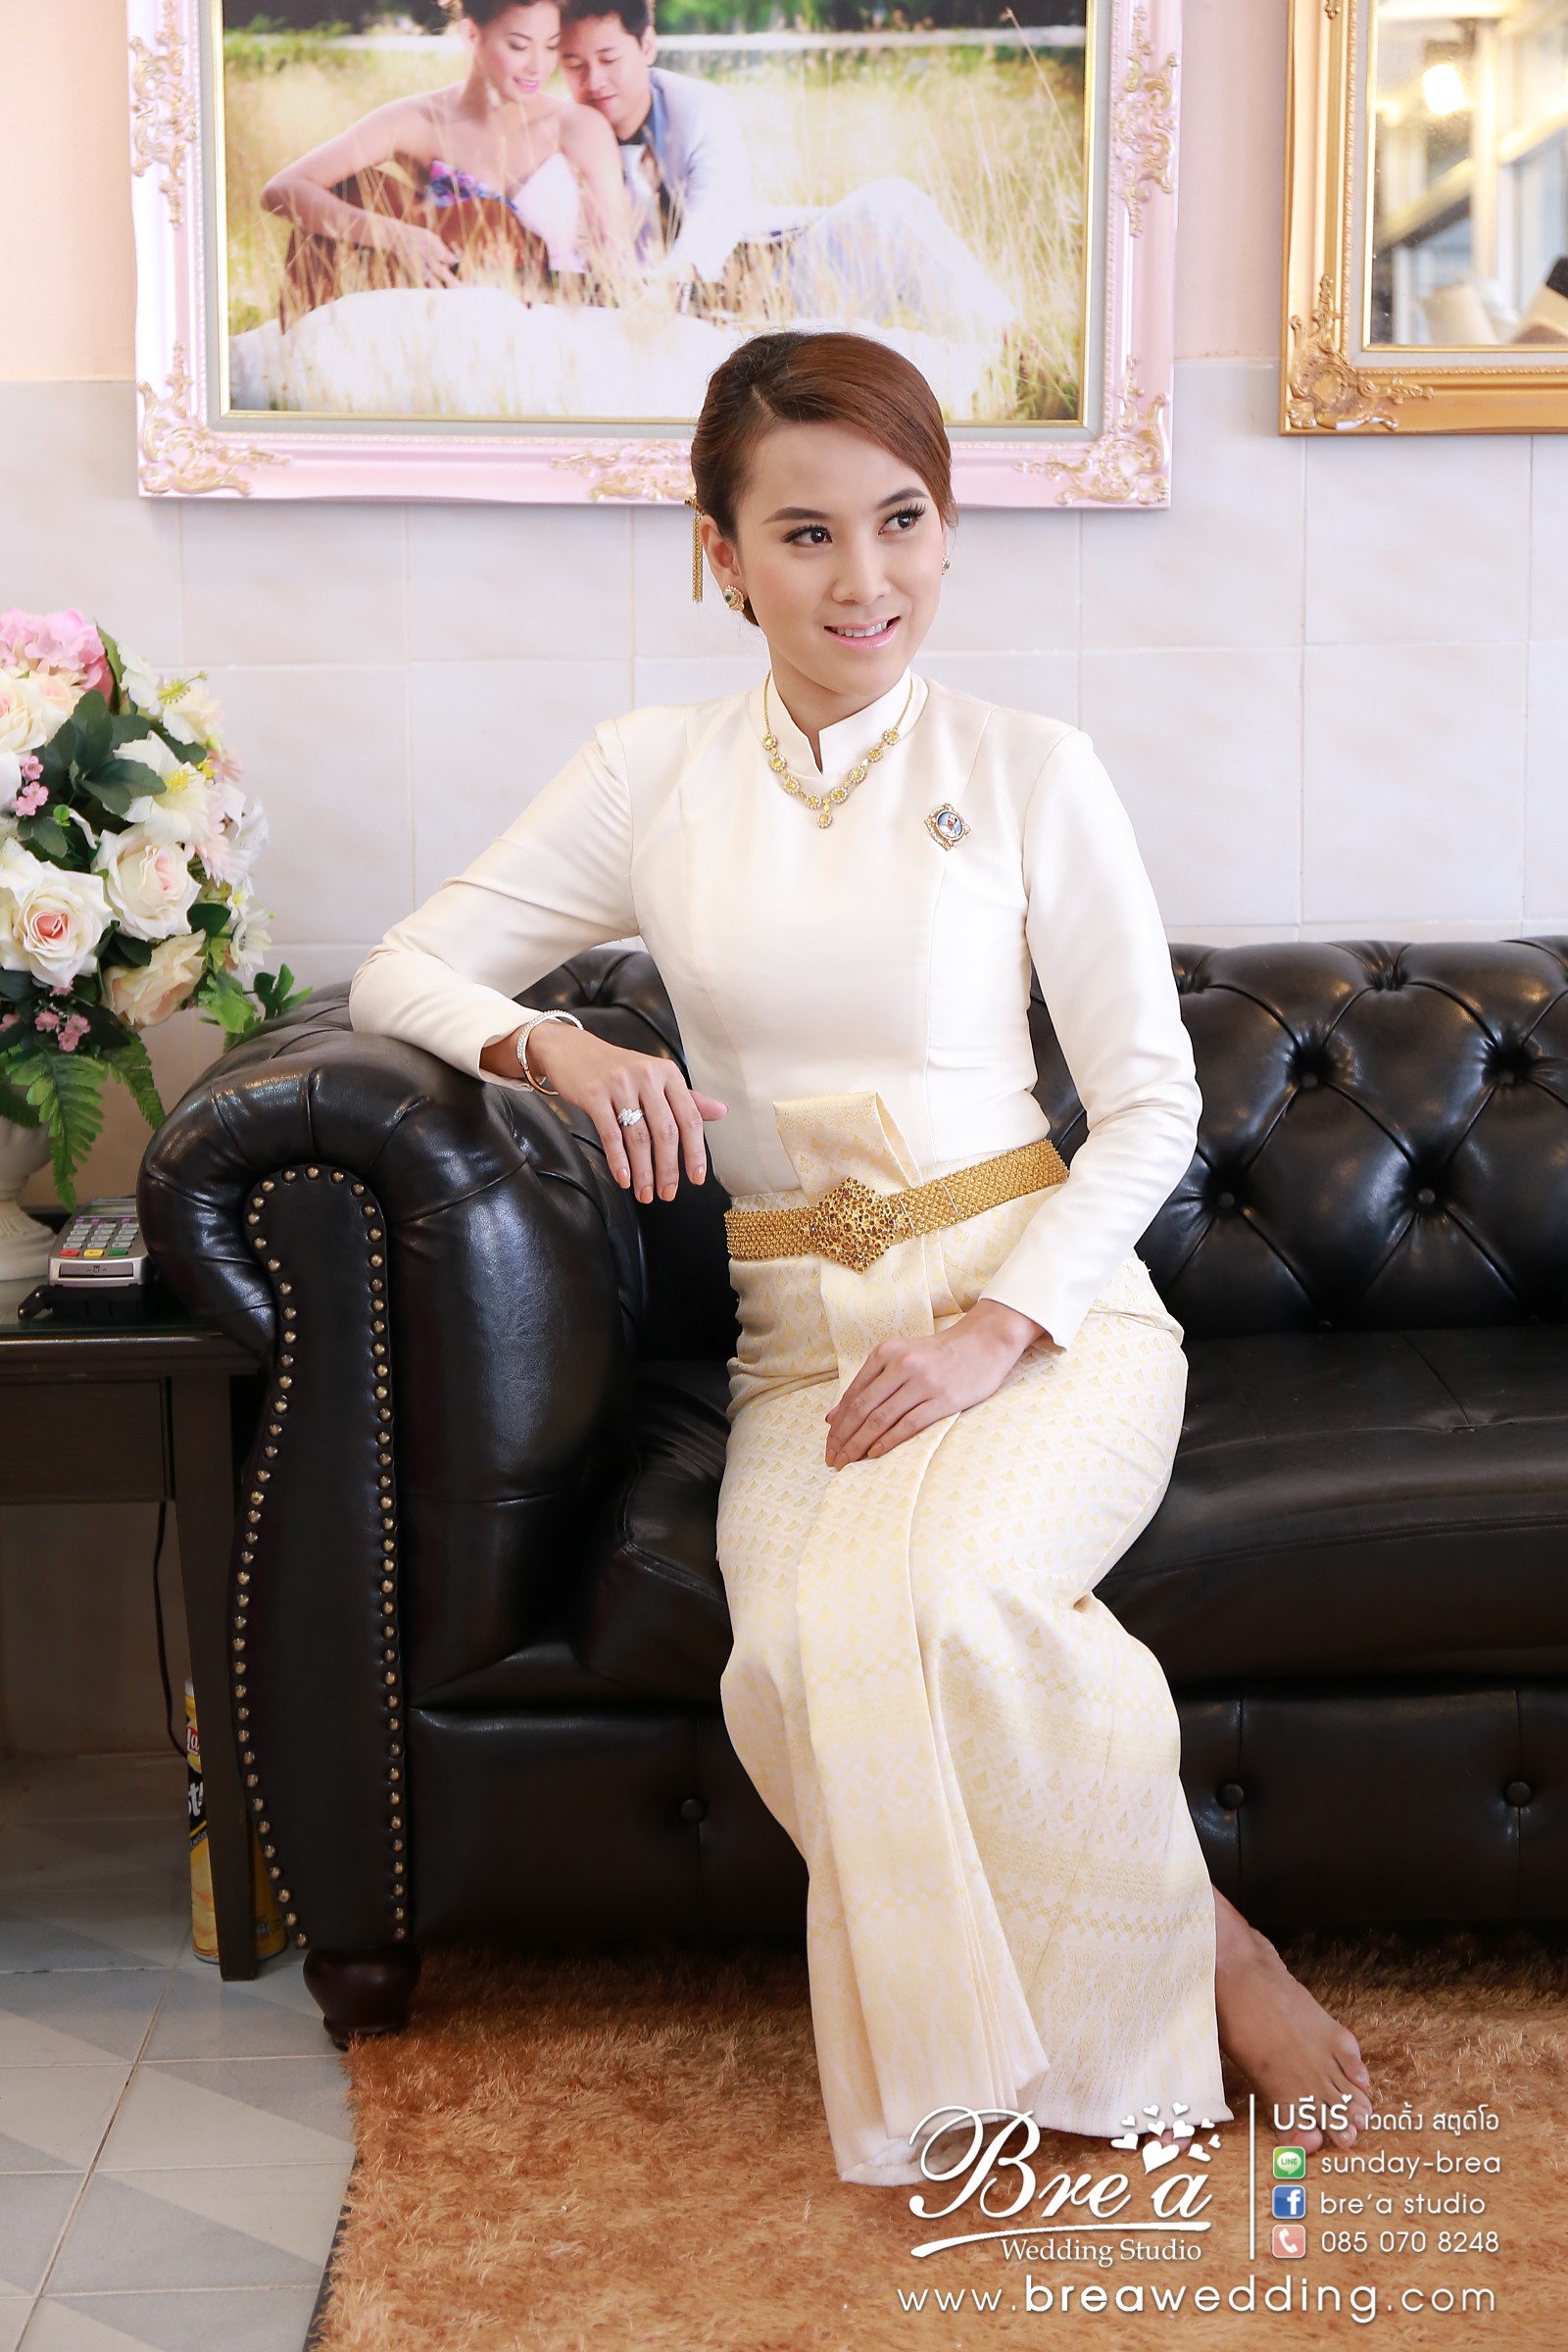 ชุดไทยแต่งงาน เจ้าสาวชุดไทย ร้านเช่าชุดไทยแต่งงาน ร้านเวดดิ้งชุดไทย นนทบุรี บางบัวทอง